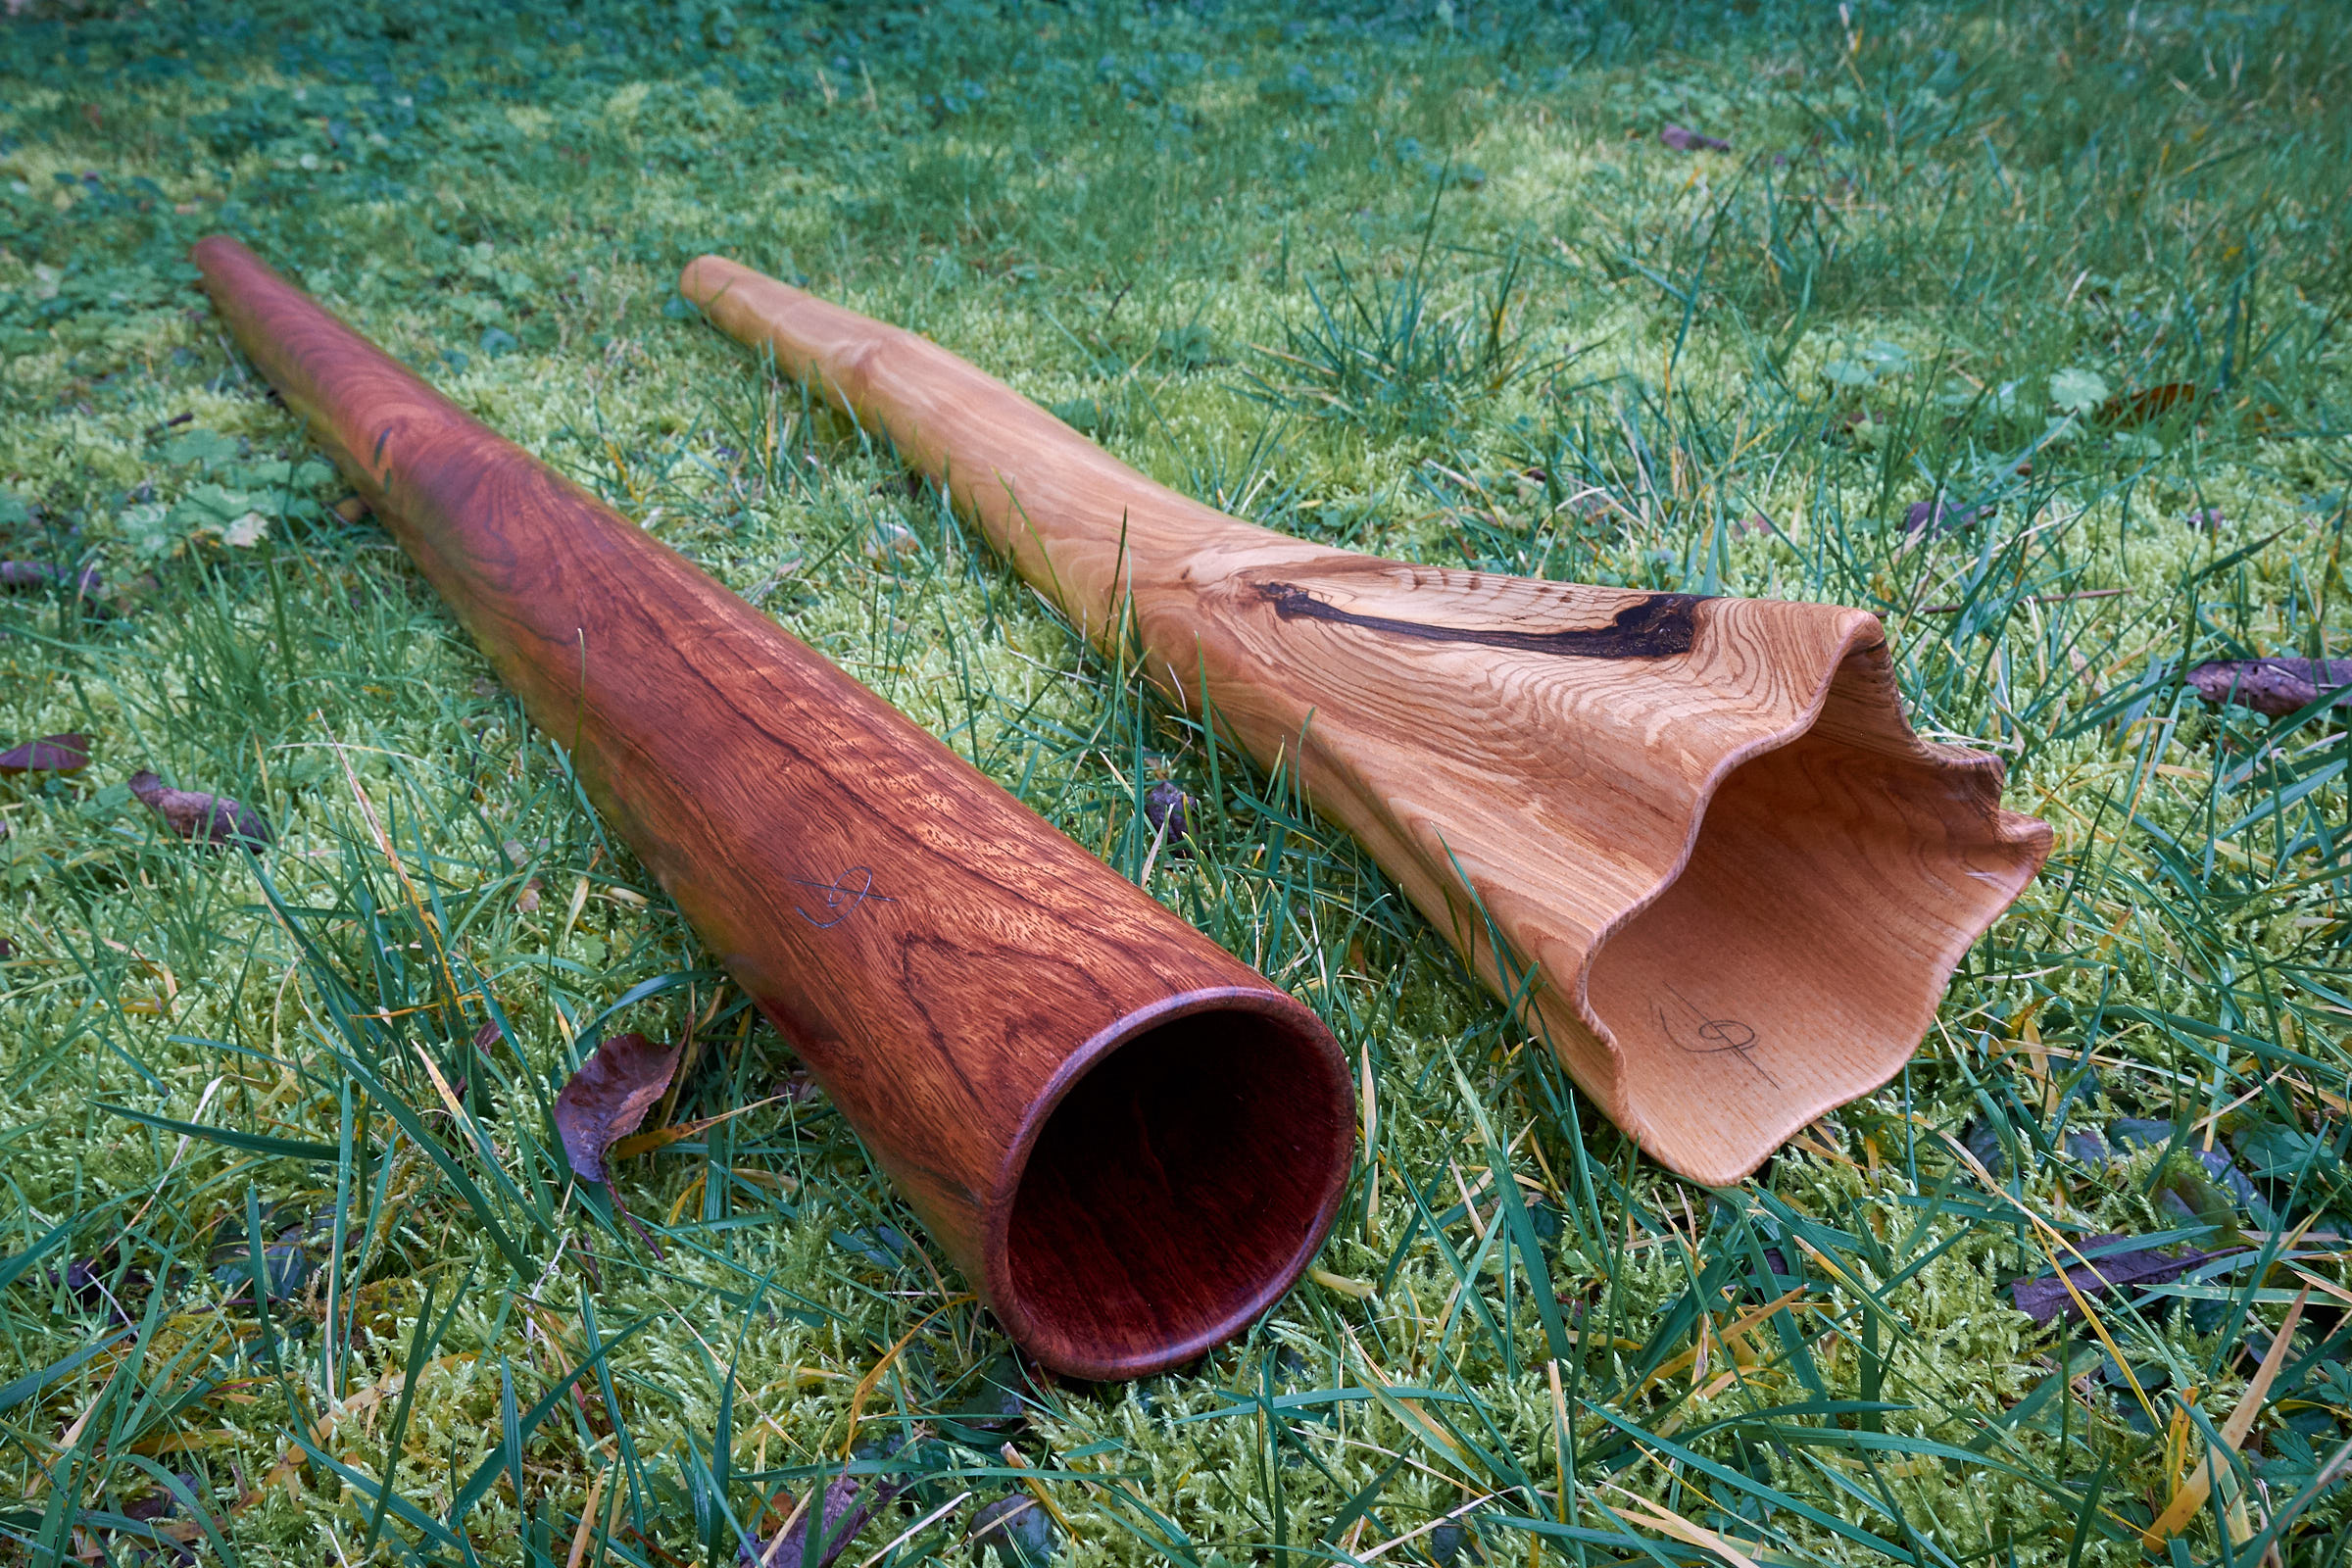 Deux didgeridoos haut de gamme : Do en Bubinga et Ré# en frêne olivier avec cloche sculptée